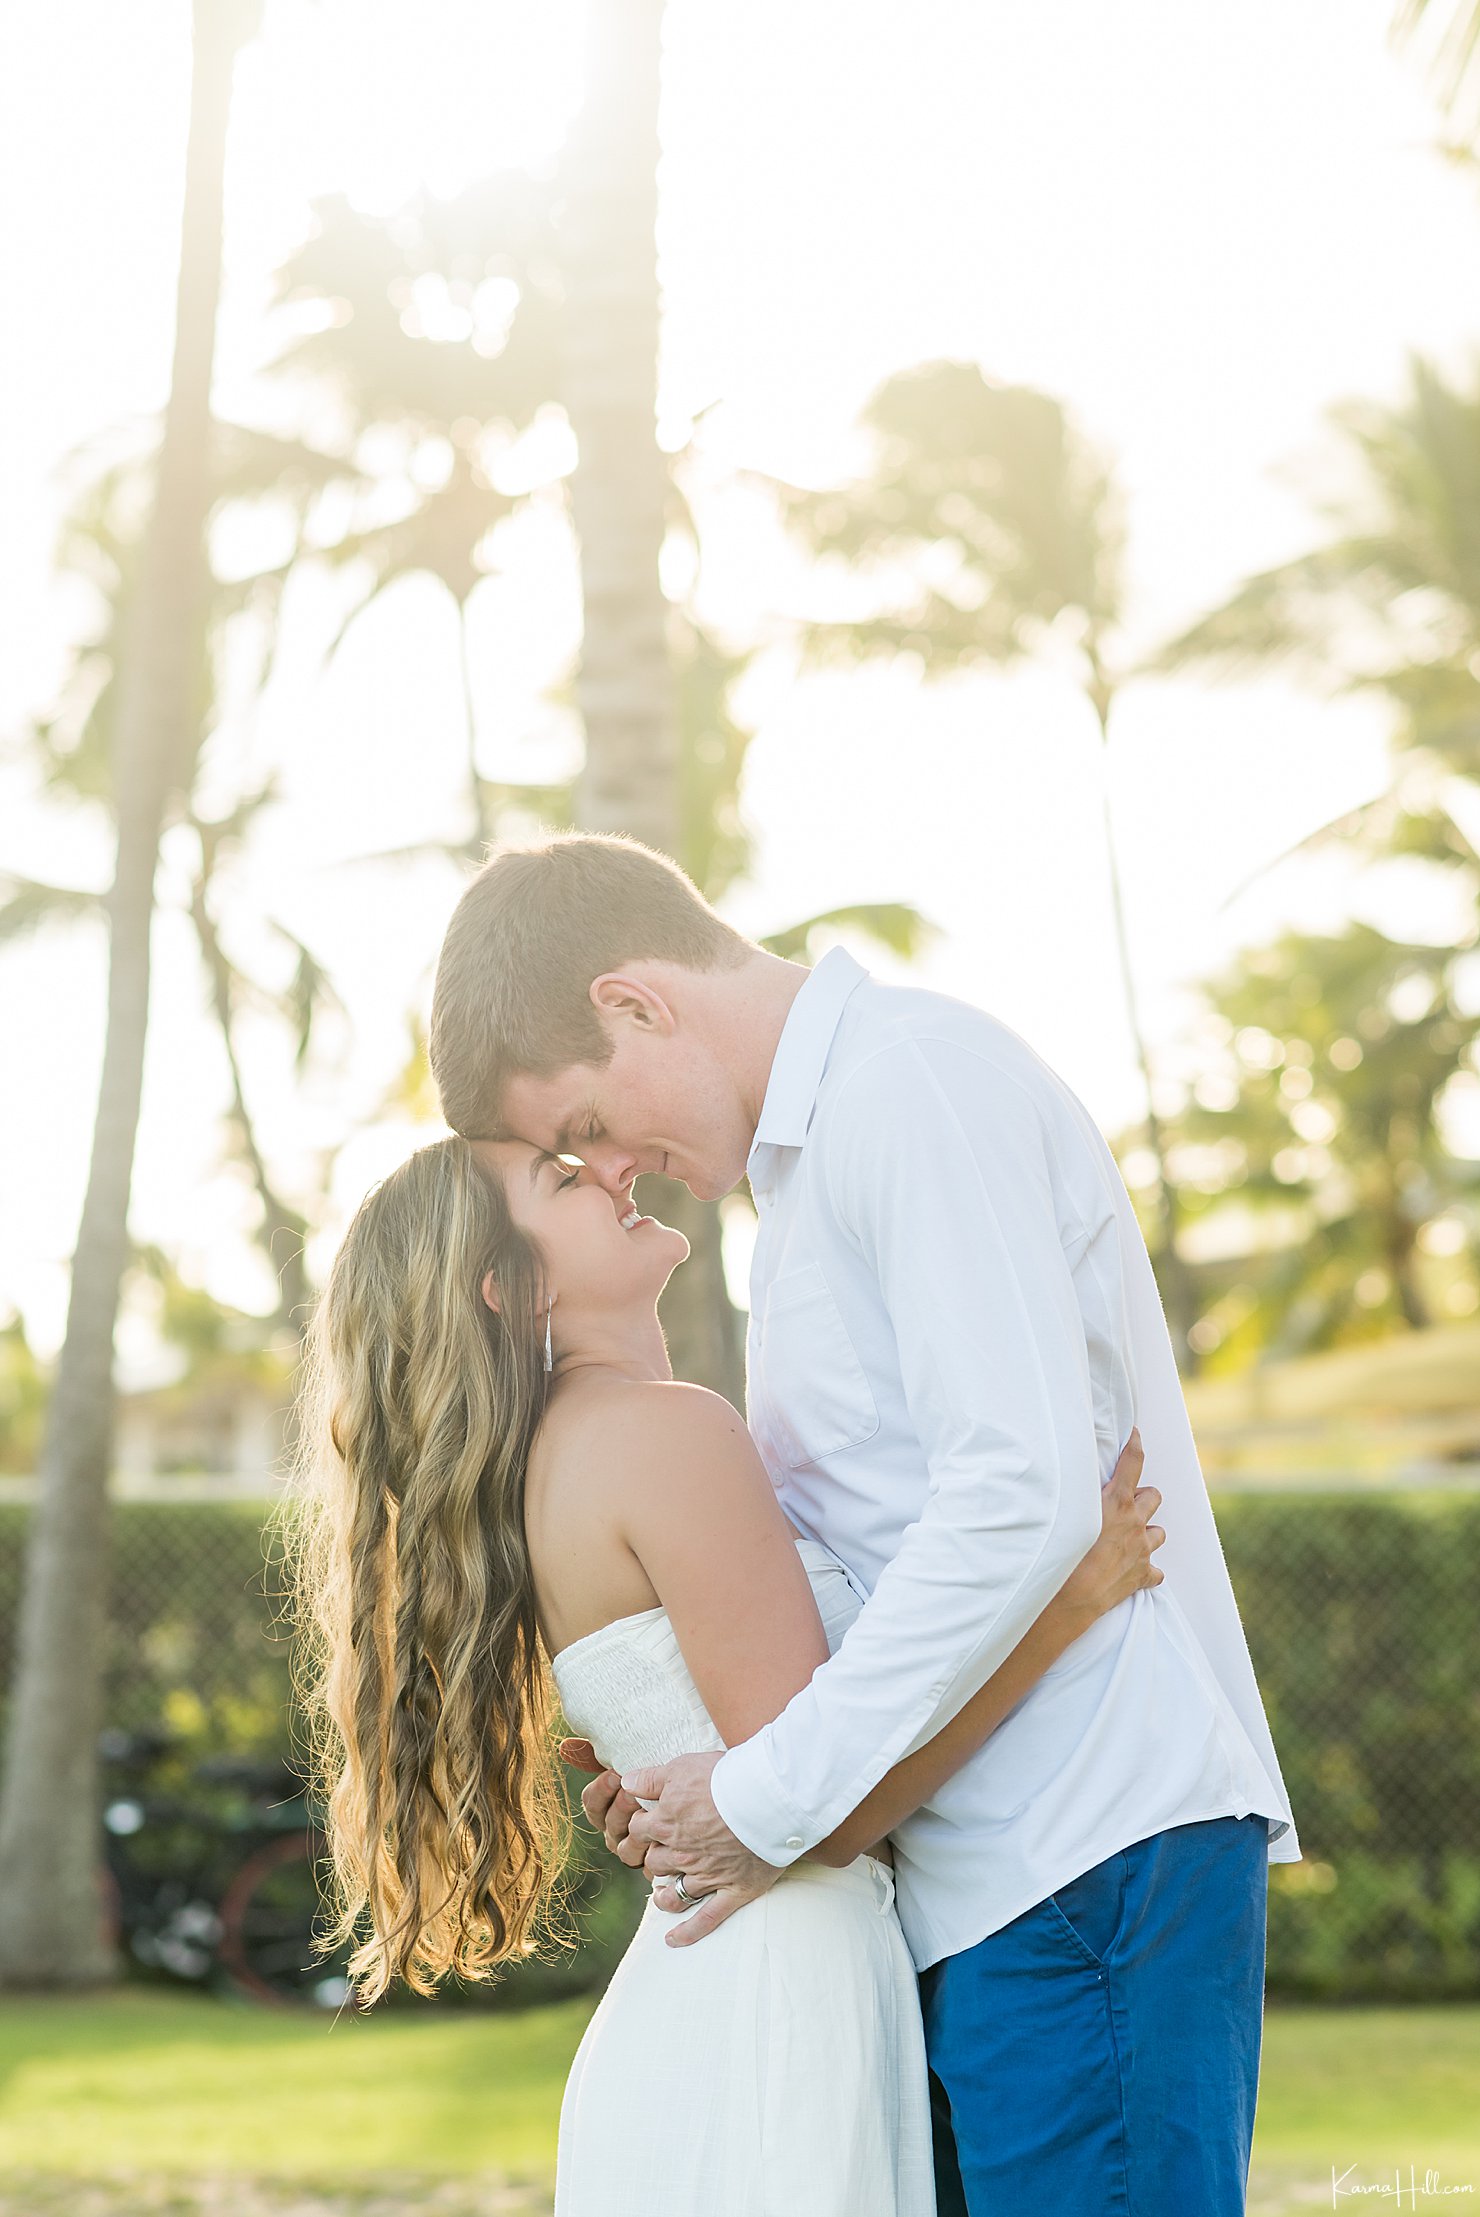 Kauai honeymoon portraits